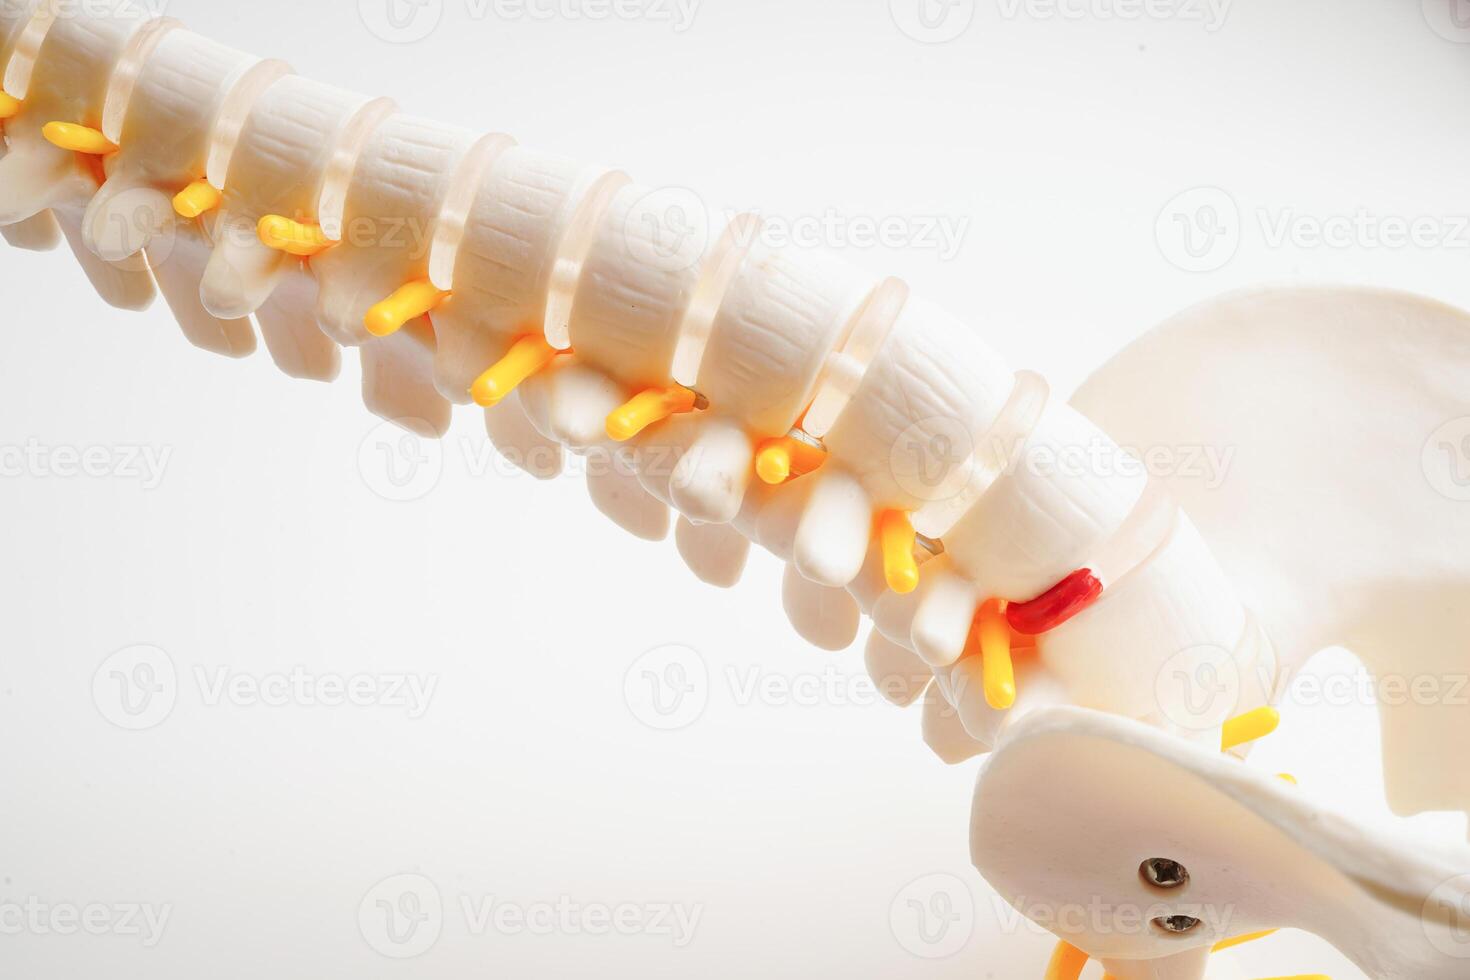 espinhal nervo e osso, lombar coluna vertebral deslocado hérnia disco fragmento, modelo para tratamento médico dentro a ortopédico departamento. foto